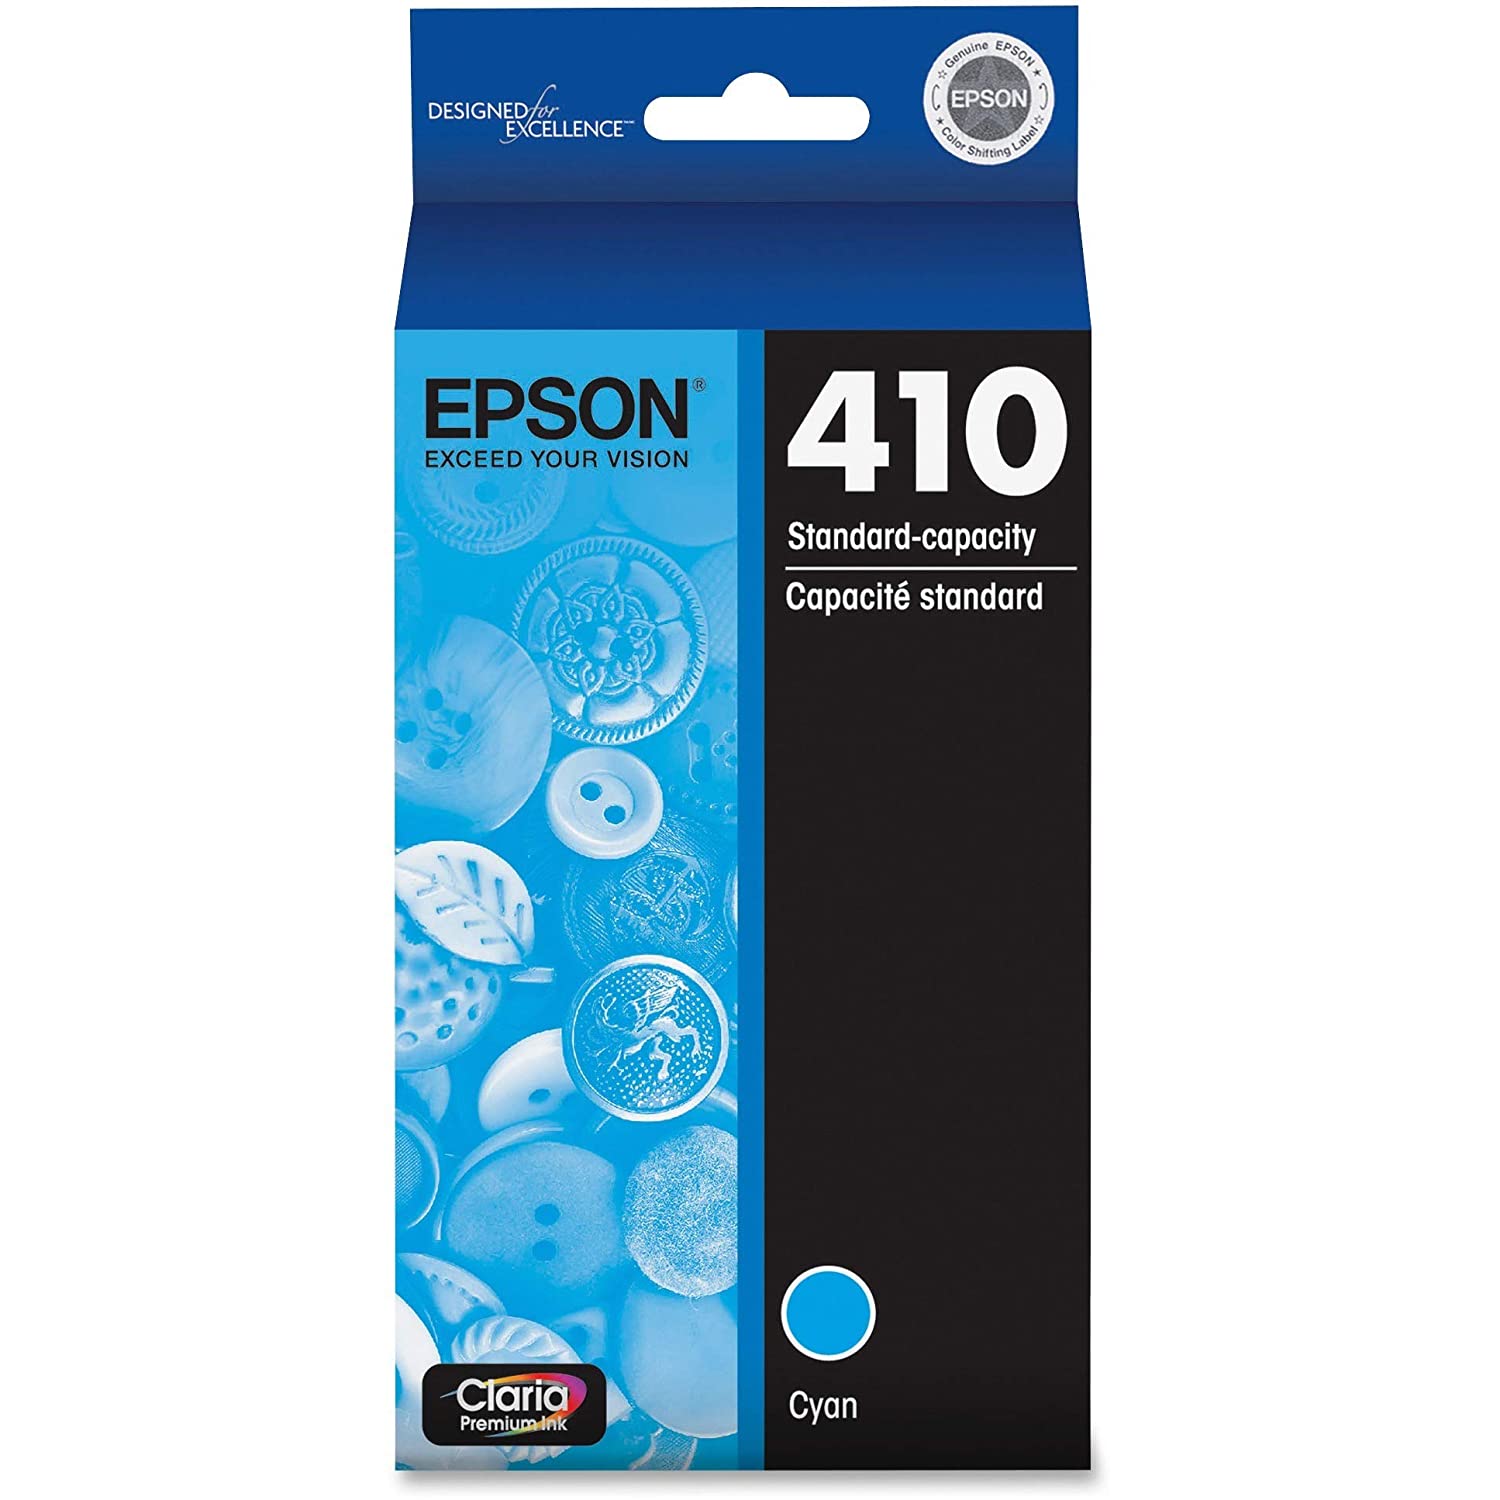 Absolute Toner Epson 410 Original Genuine OEM Cyan Ink Cartridge | T410220S Original Epson Cartridge